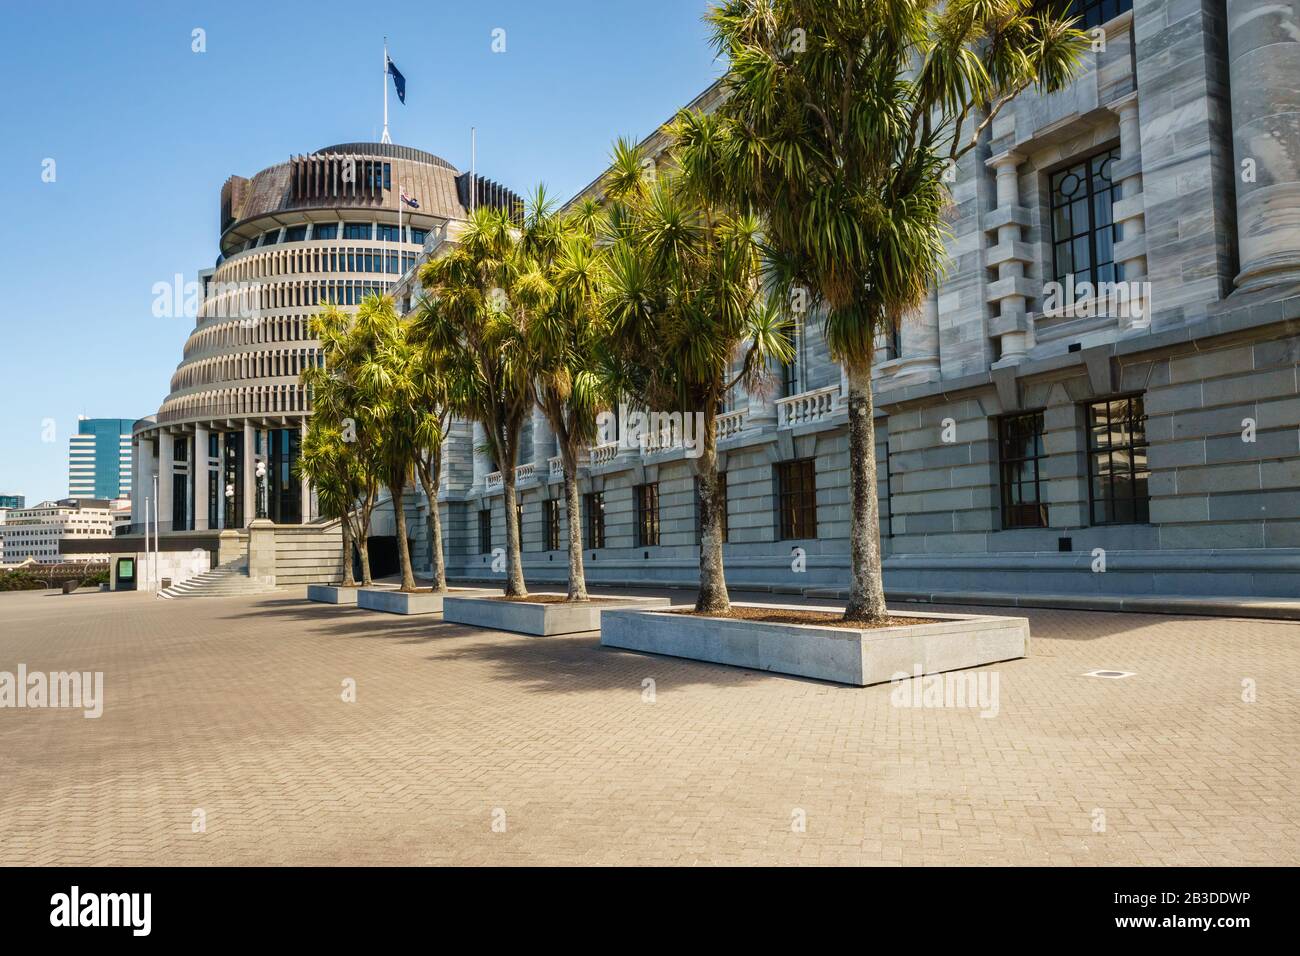 Édifices du Parlement situés à Wellington, en Nouvelle-Zélande. L'aile exécutive est une forme distinctive et est communément appelée Beehive. Banque D'Images